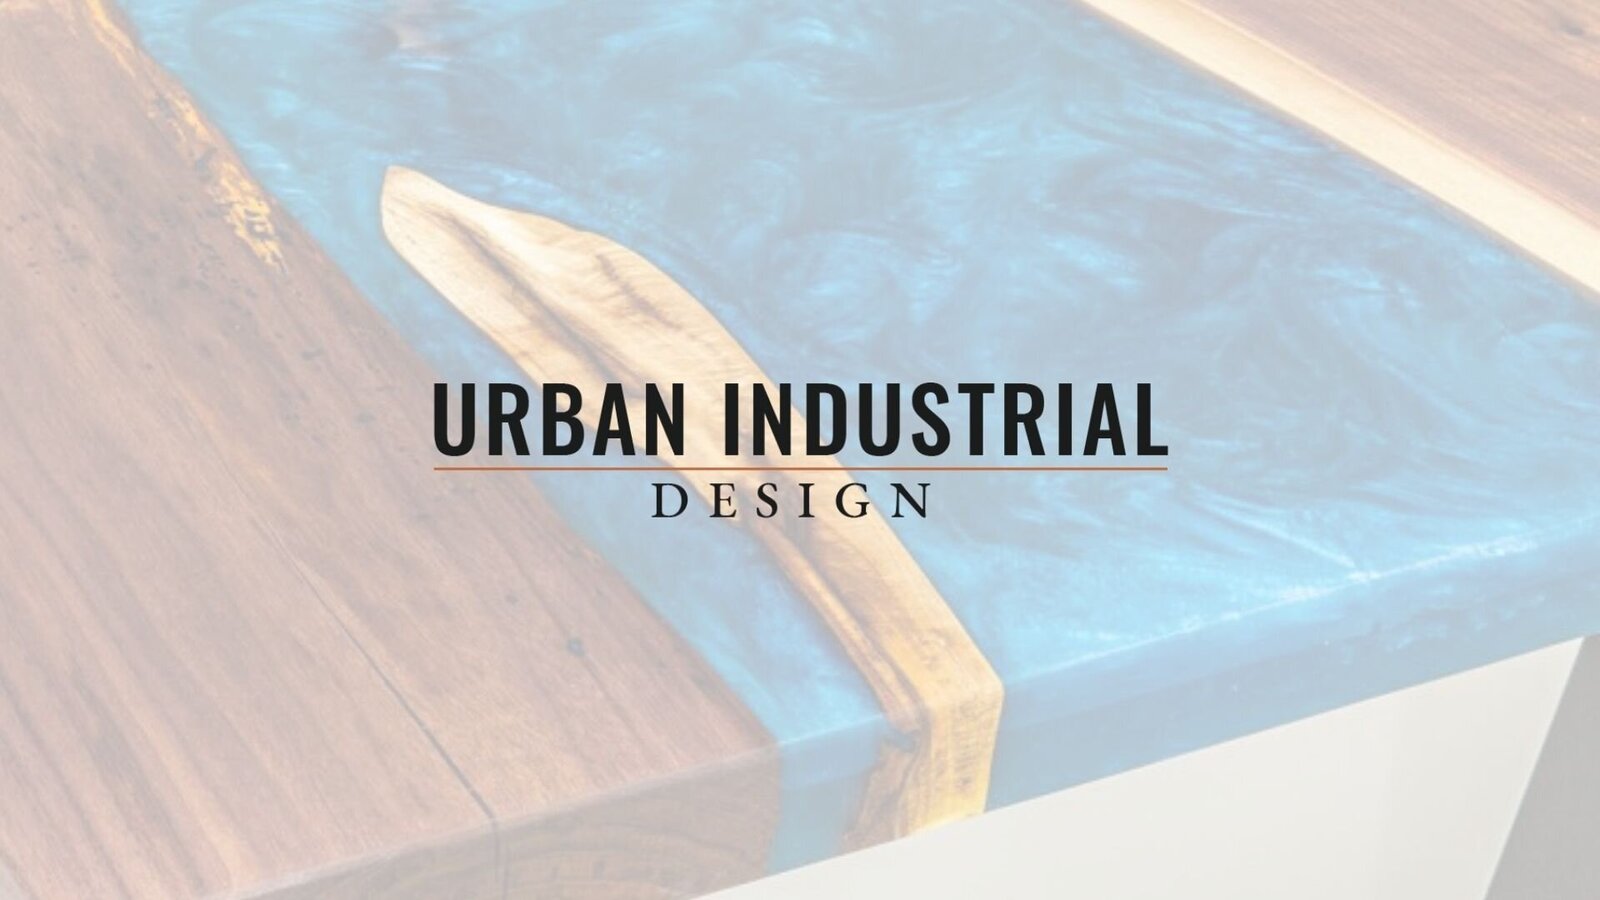 Urban Industrial Design Branding Overview